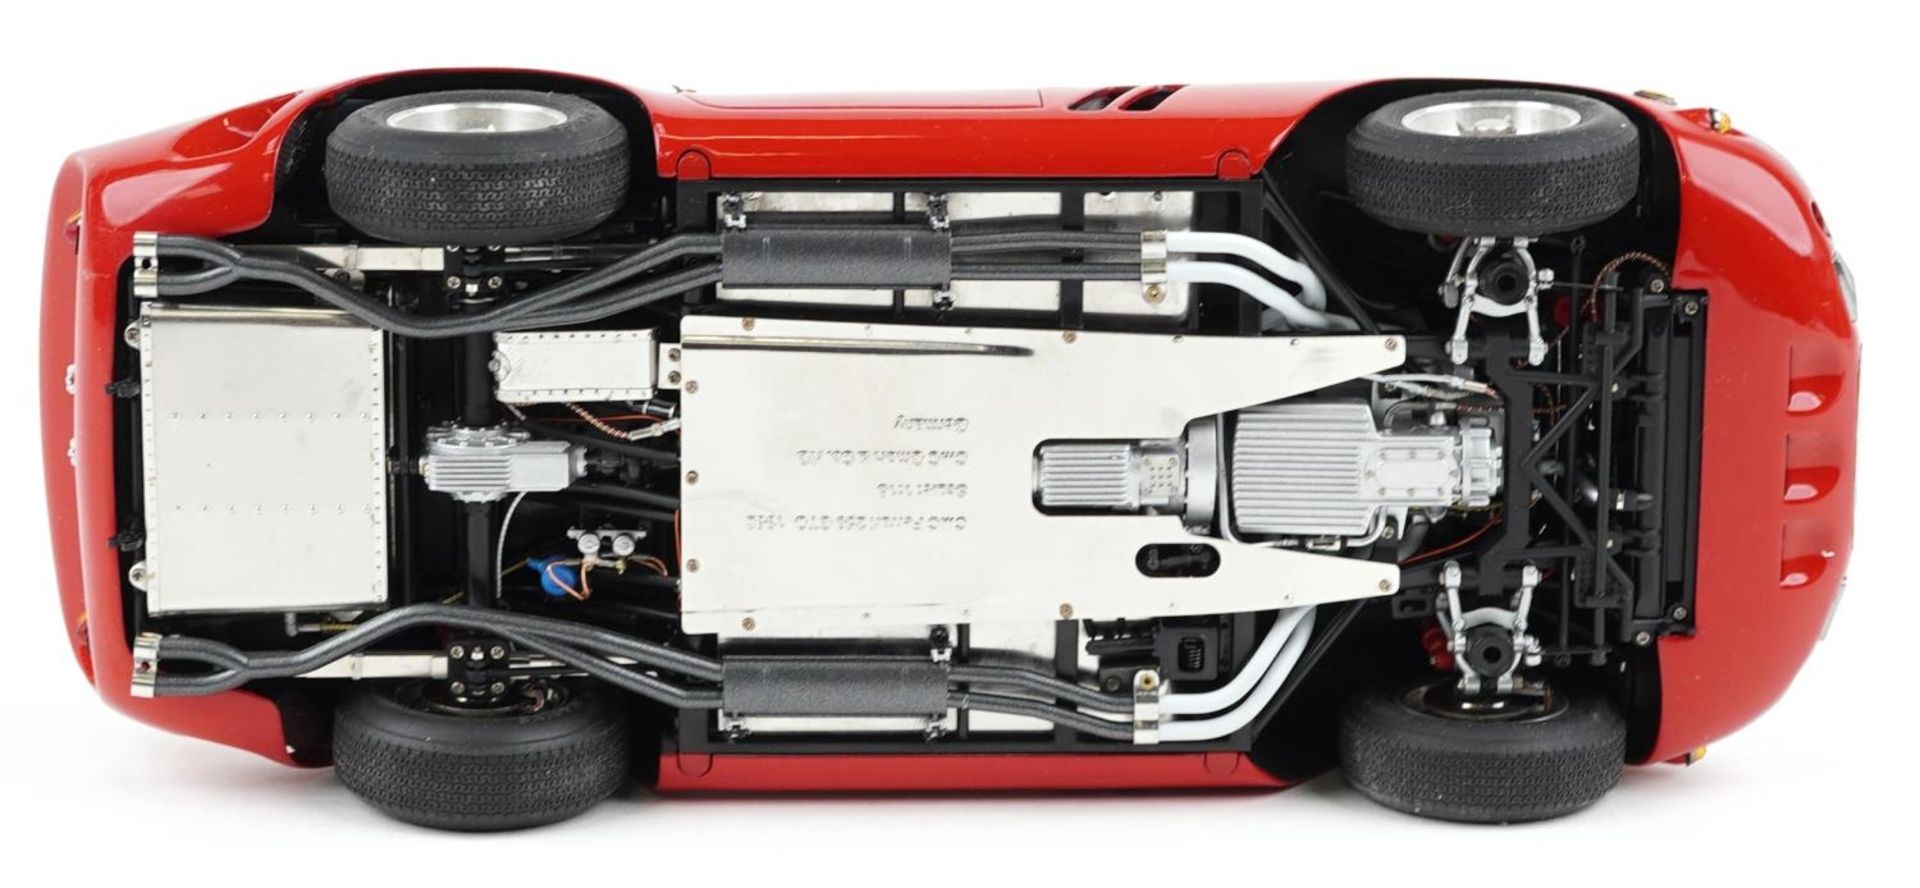 CMC 1:18 scale diecast model Ferrari 250 GTO in red with box and slip cover - Bild 4 aus 5